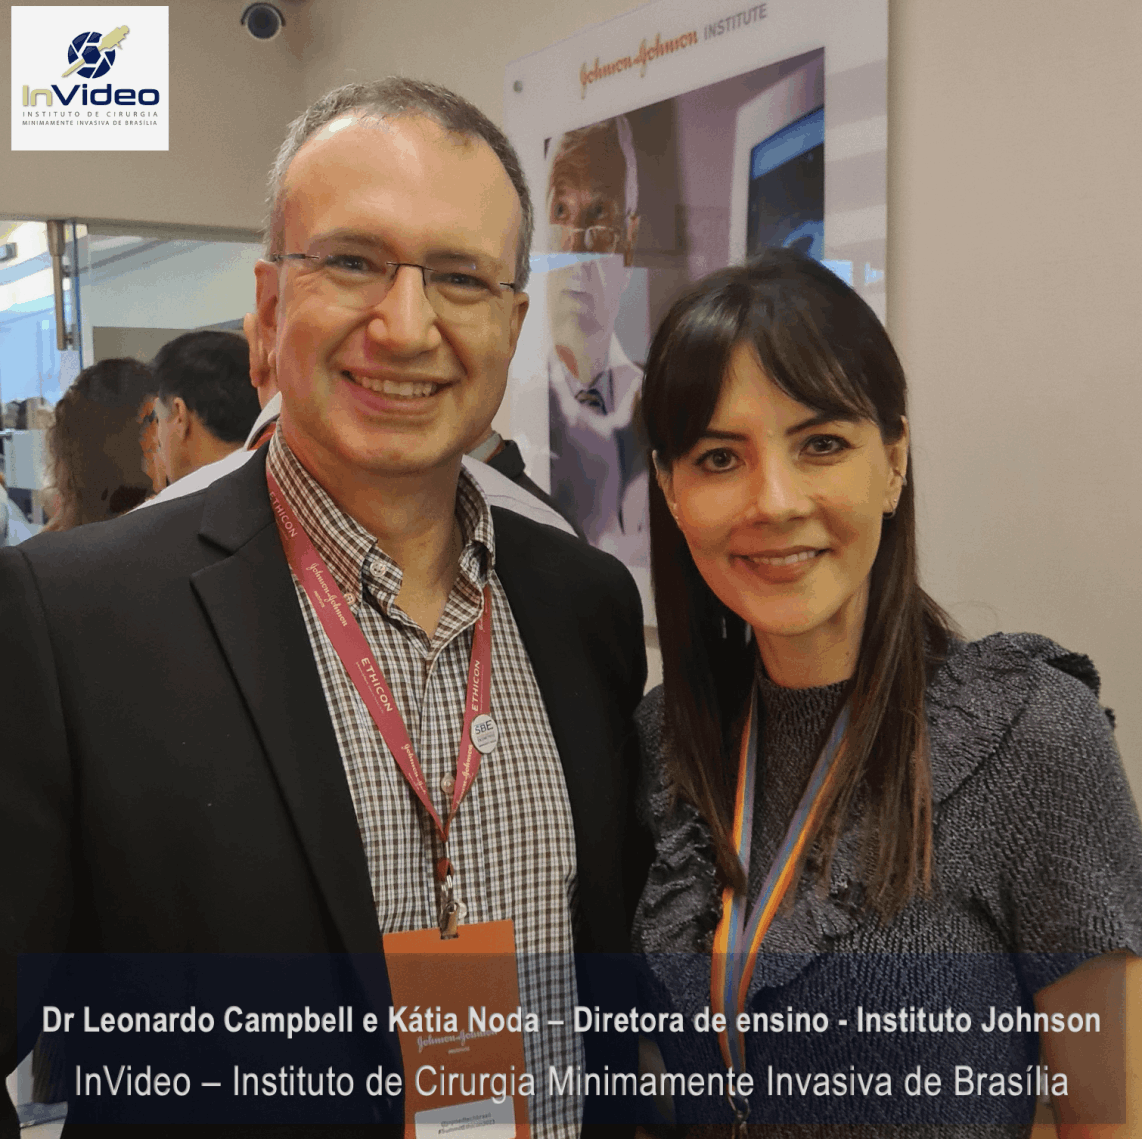 Dr Leonardo Campbell e Kátia Noda, gerente de ensino médico da Johnson no Brasil